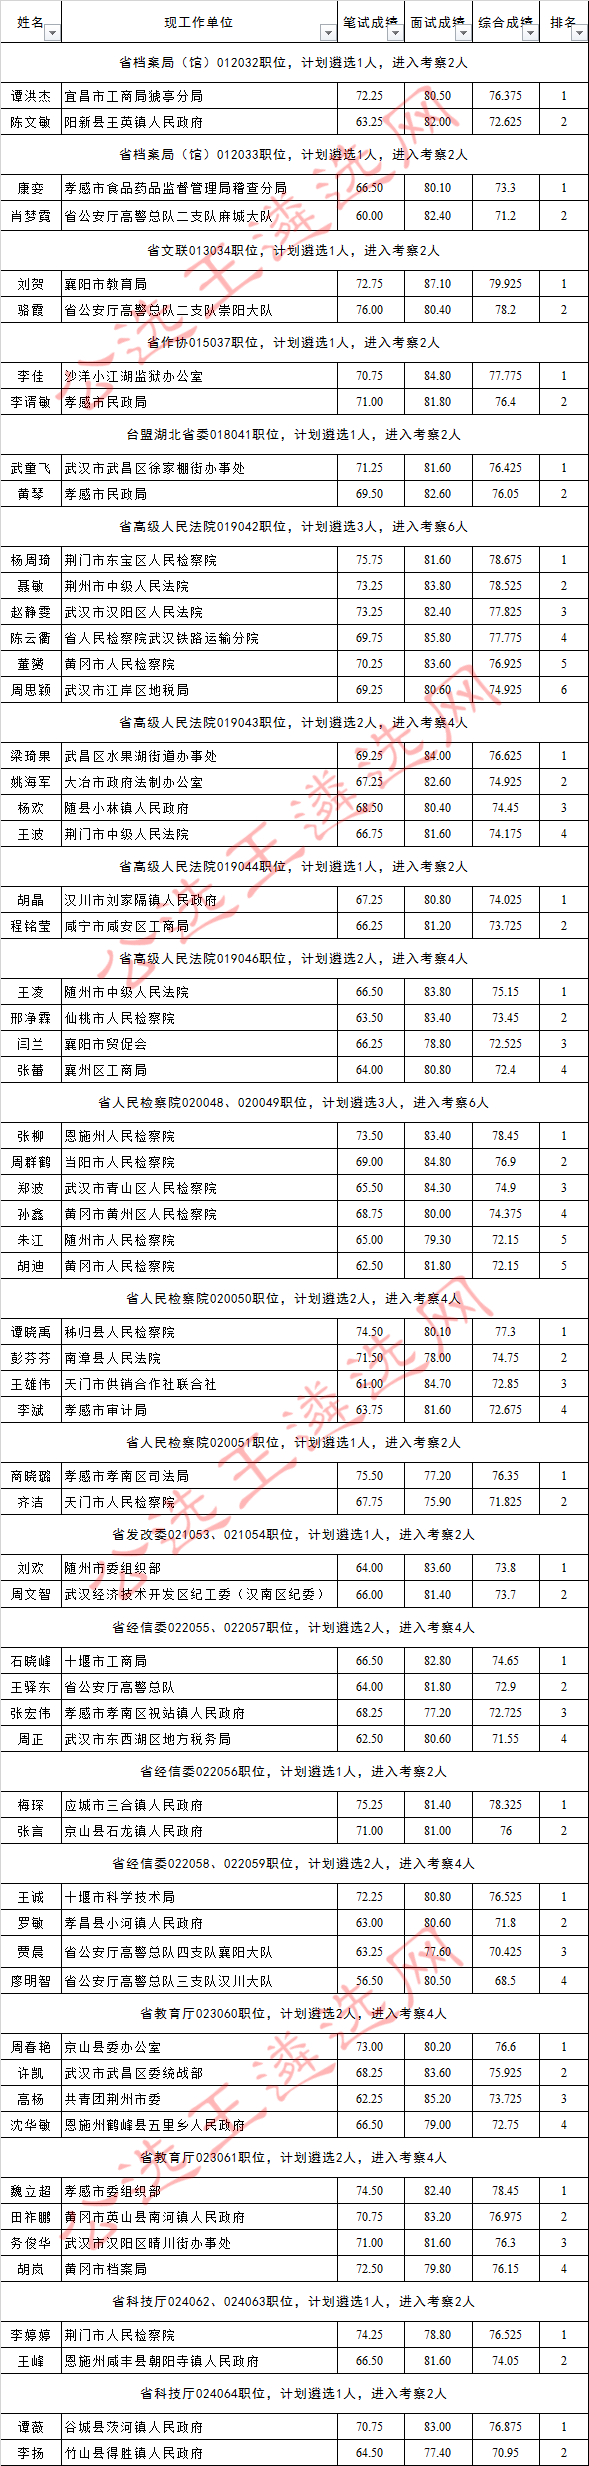 2017年湖北省省直机关公开遴选公务员考察人员名单2_meitu_2.jpg